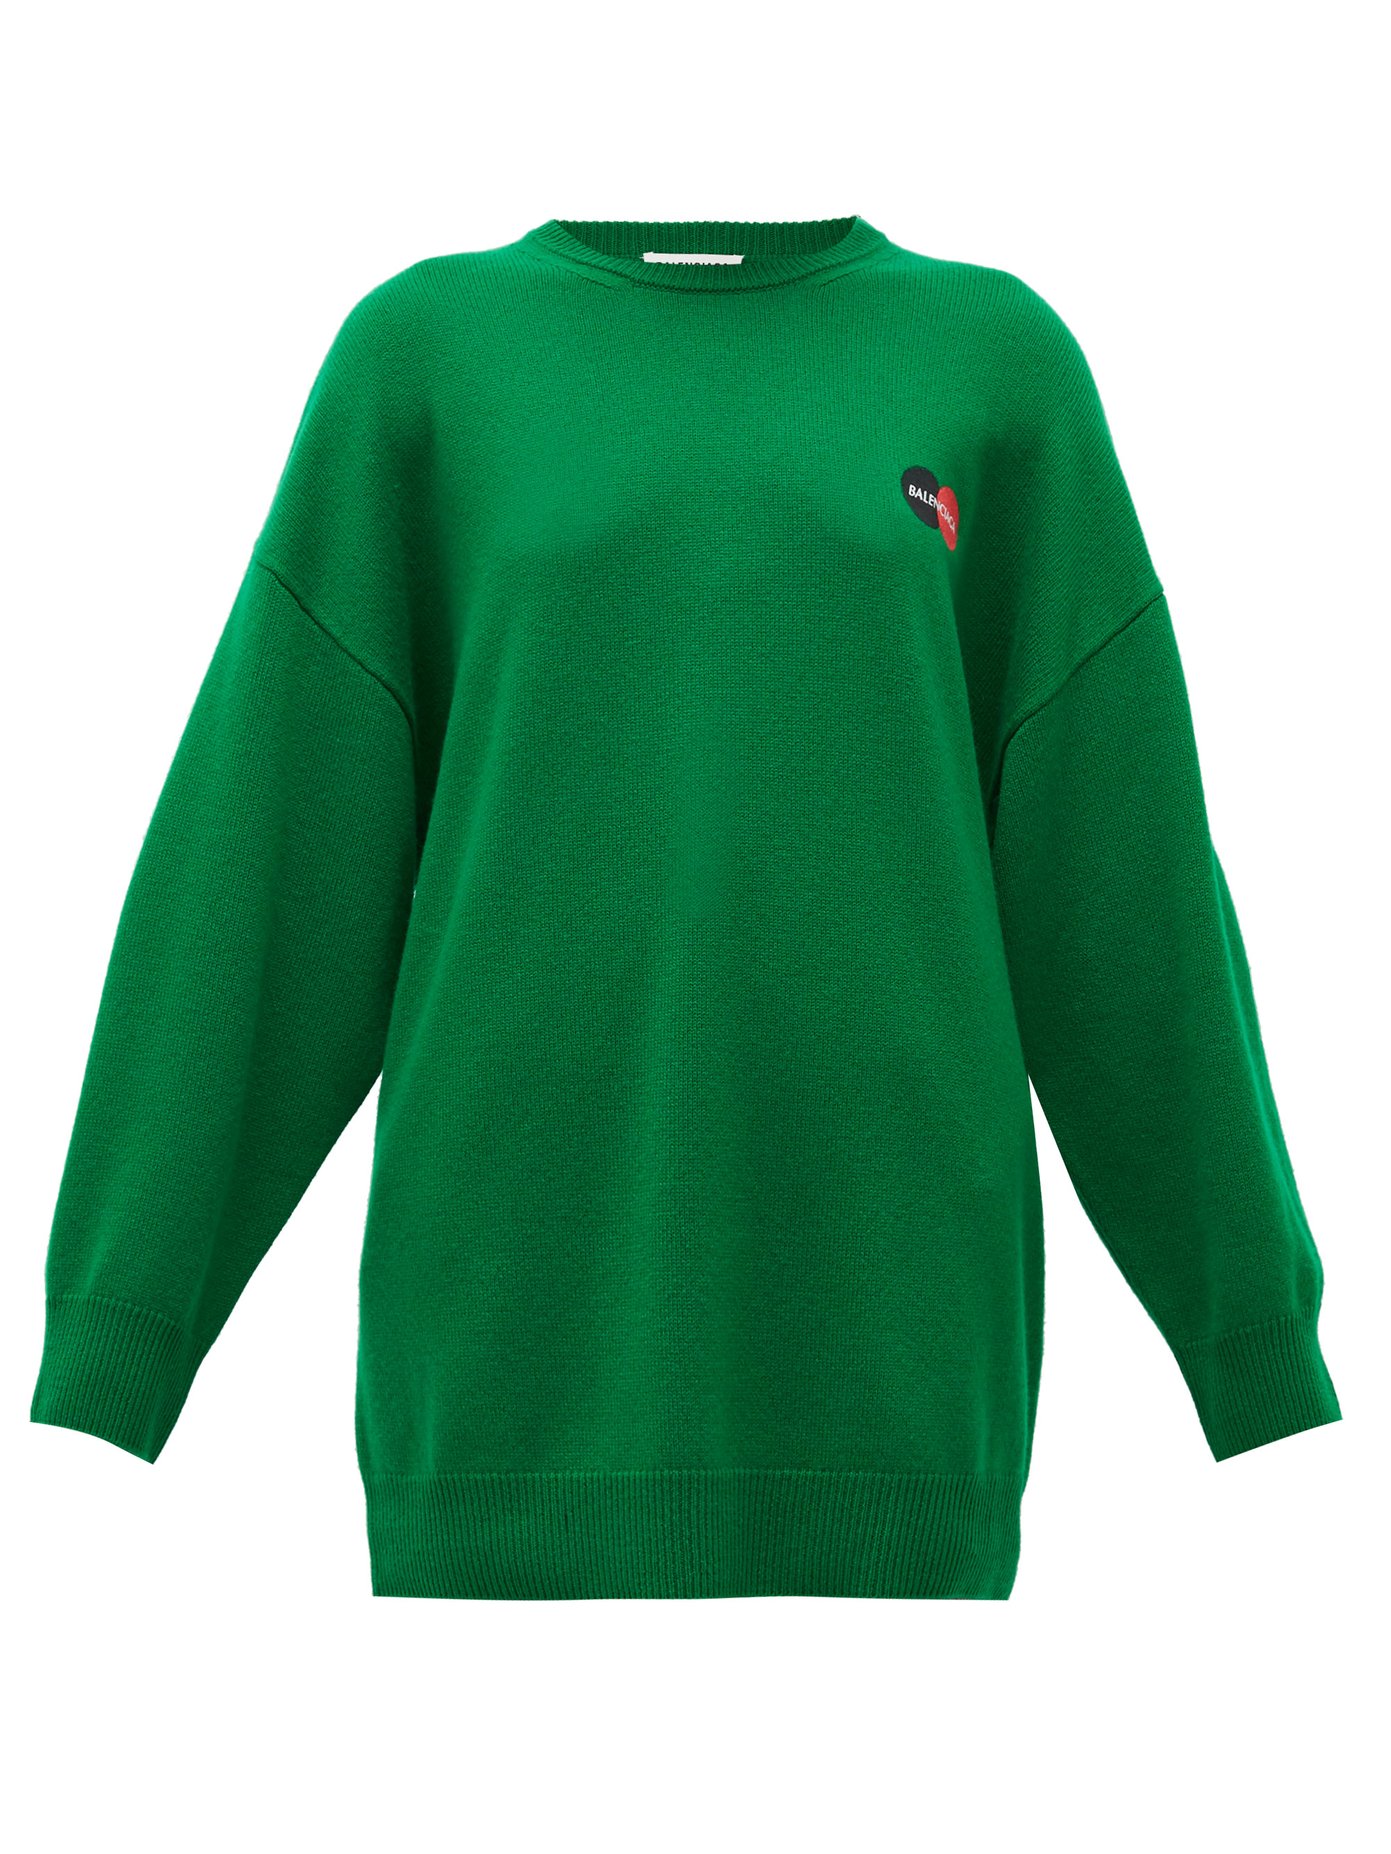 balenciaga green sweater